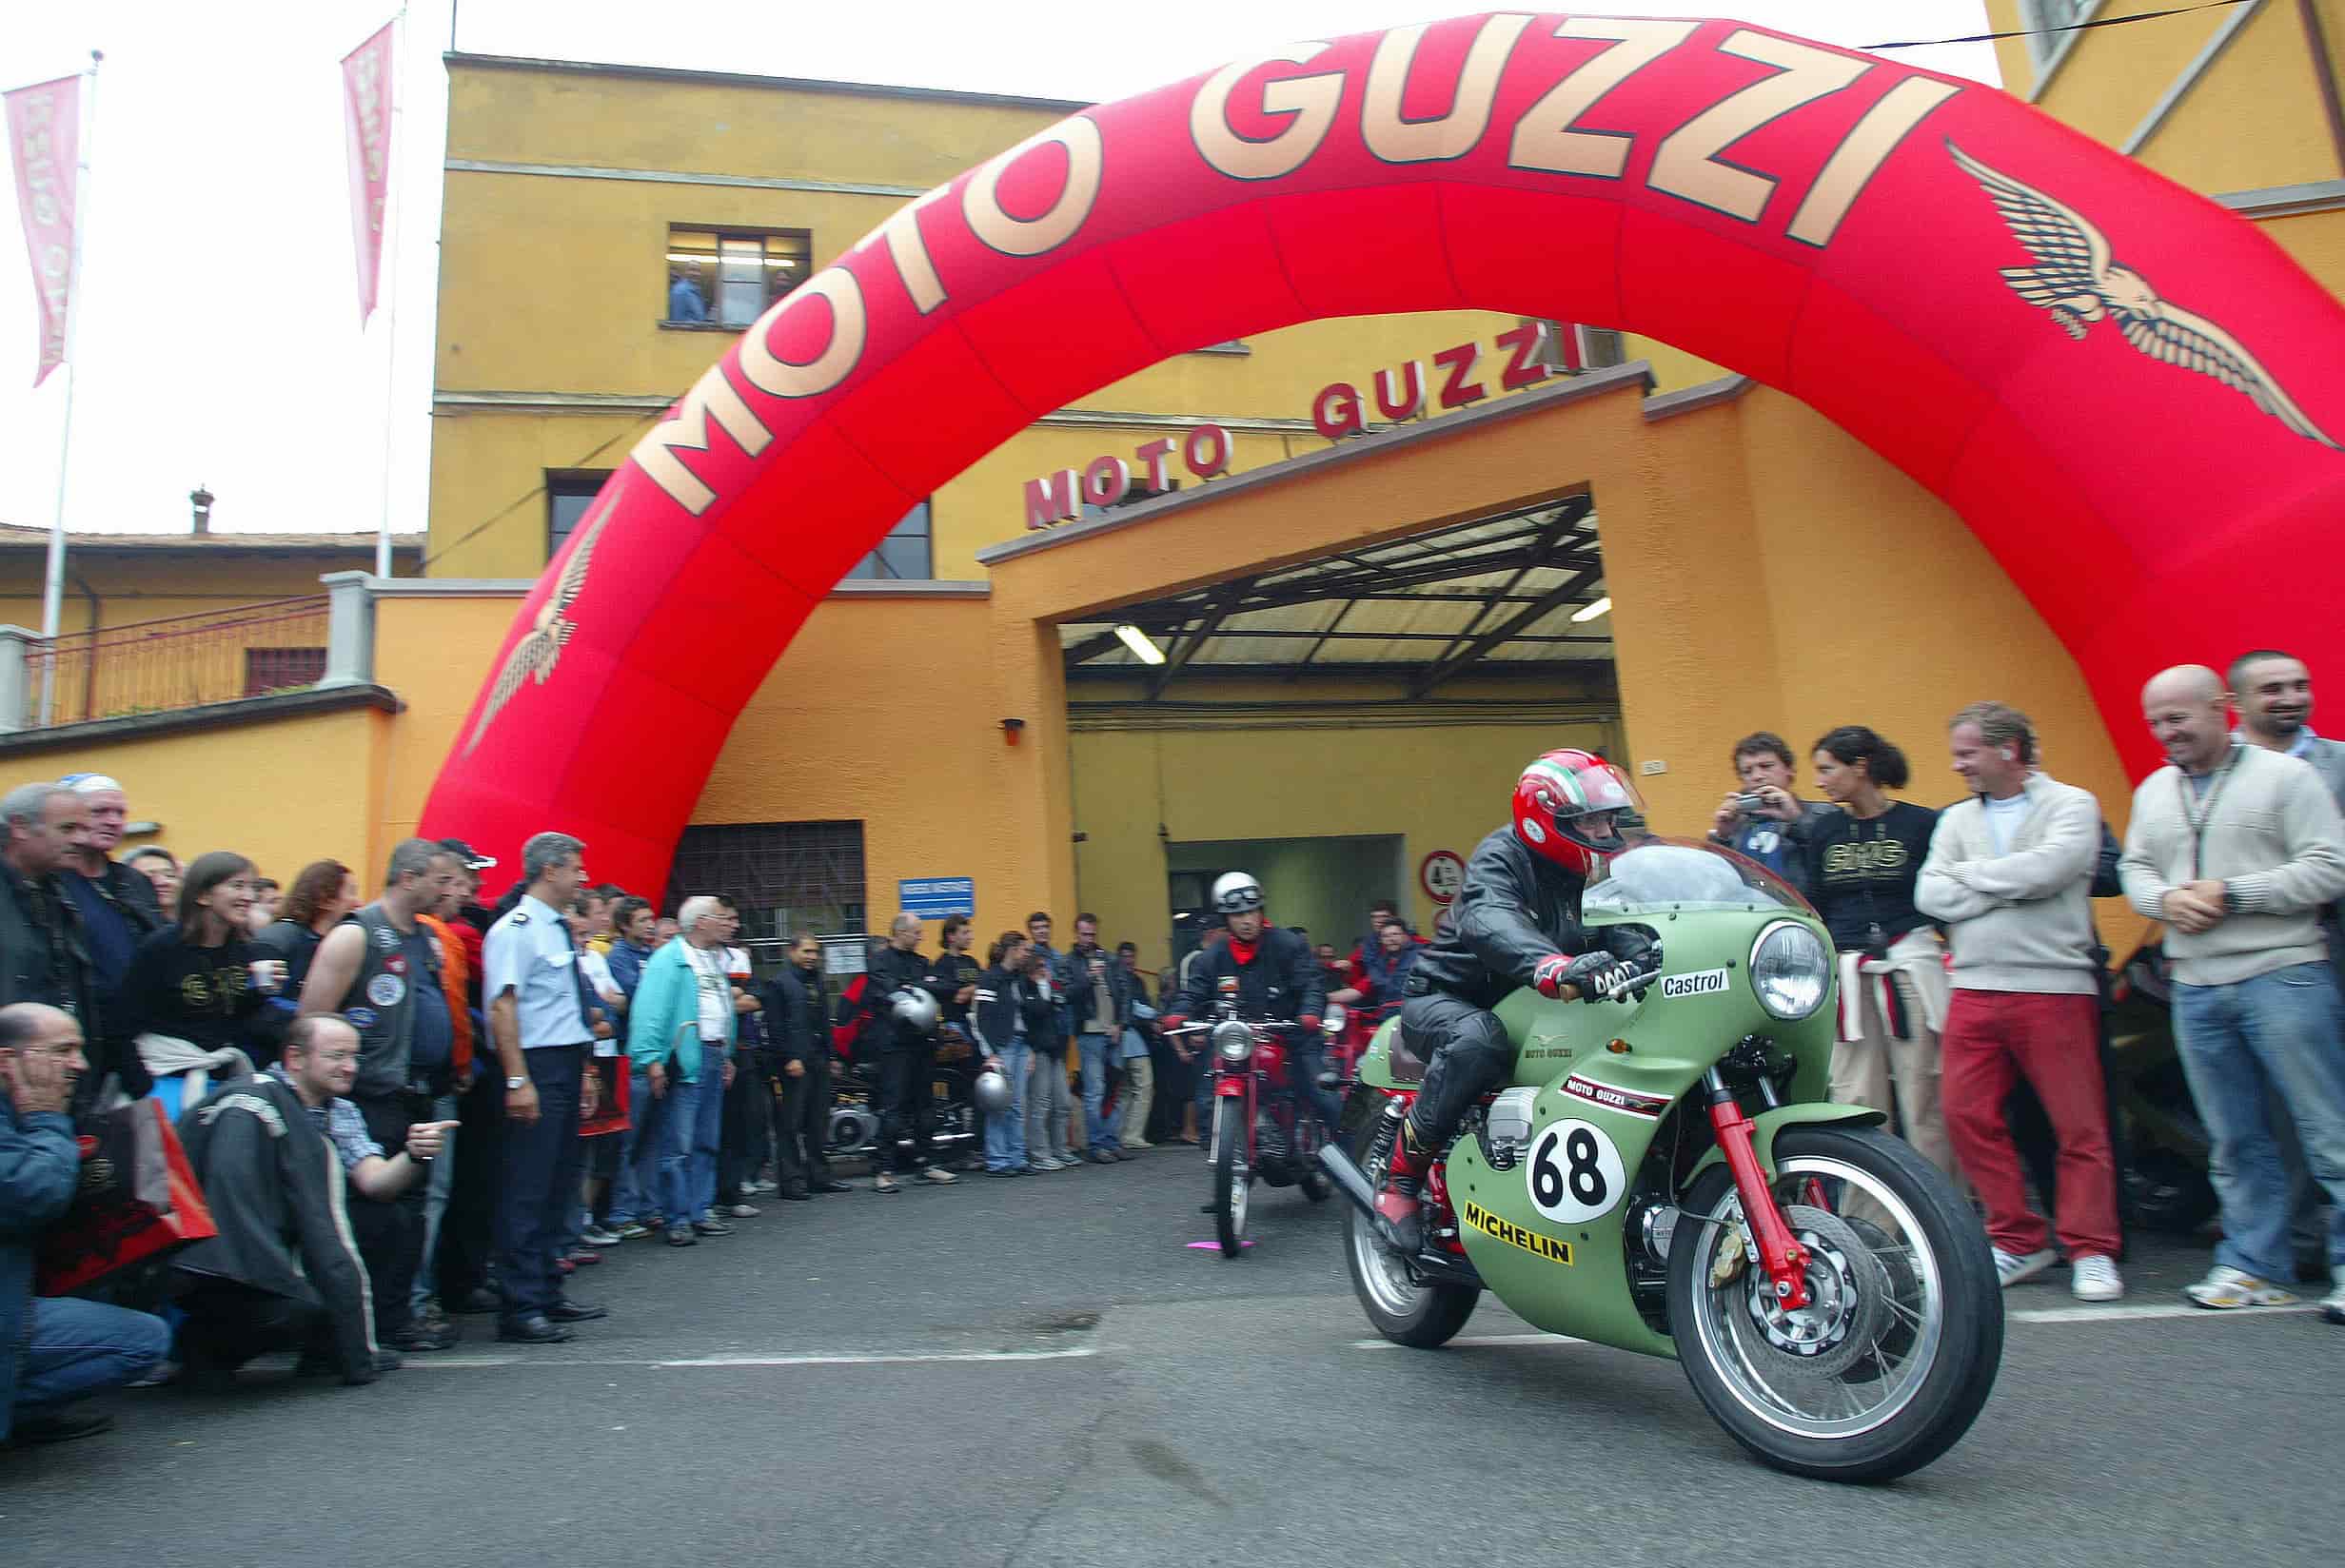 Satu Abad Moto Guzzi Bakal Digelar Meriah pada September 2022 Mendatang